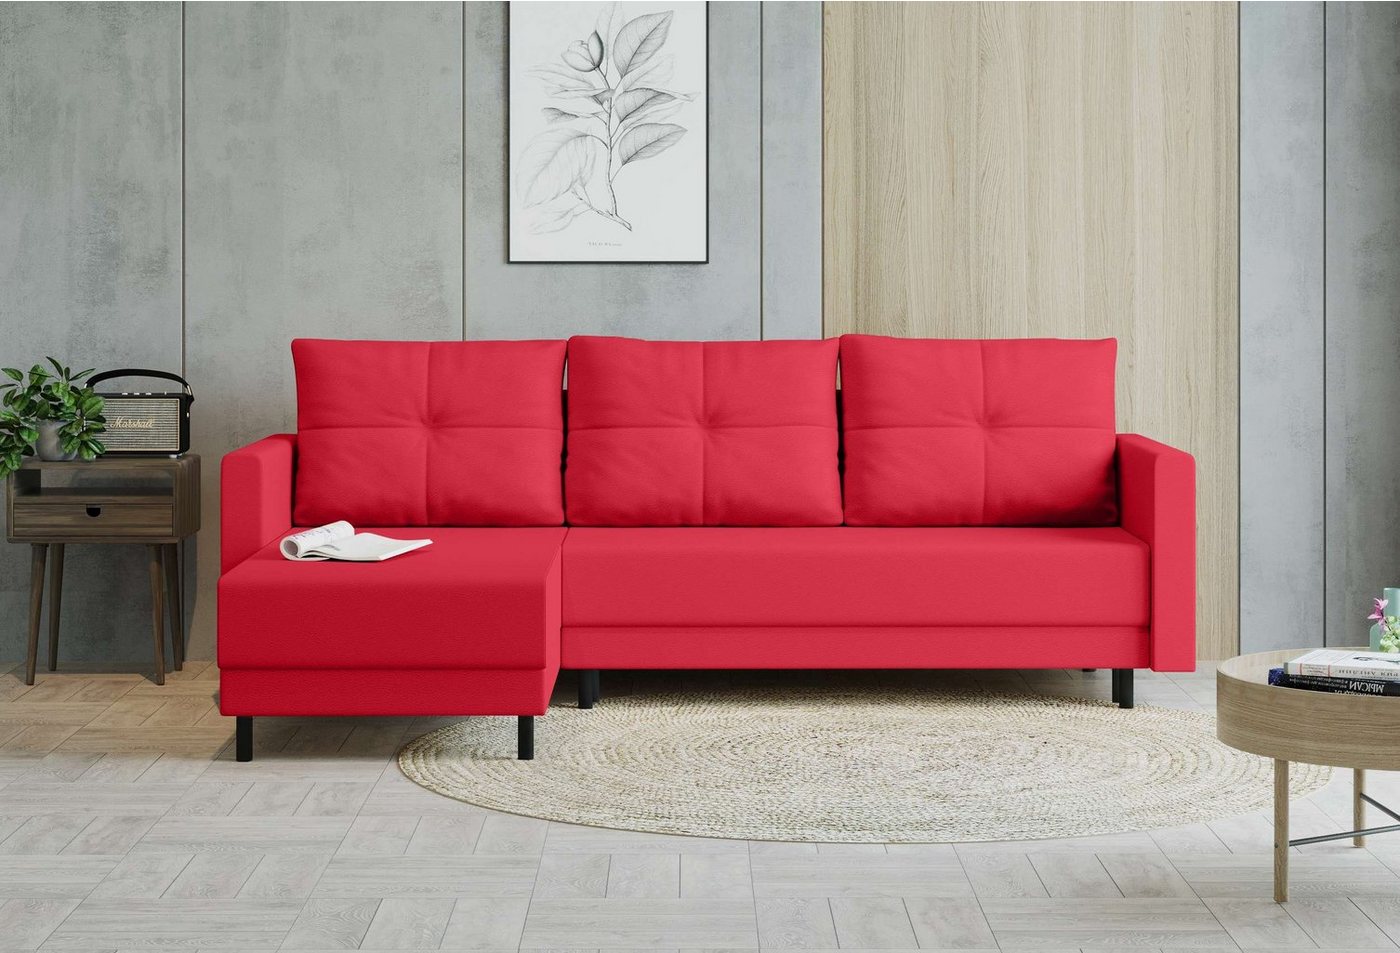 99rooms Ecksofa Paloma, L-Form, Eckcouch, Sofa, Sitzkomfort, mit Bettfunktion, mit Bettkasten, Modern Design von 99rooms